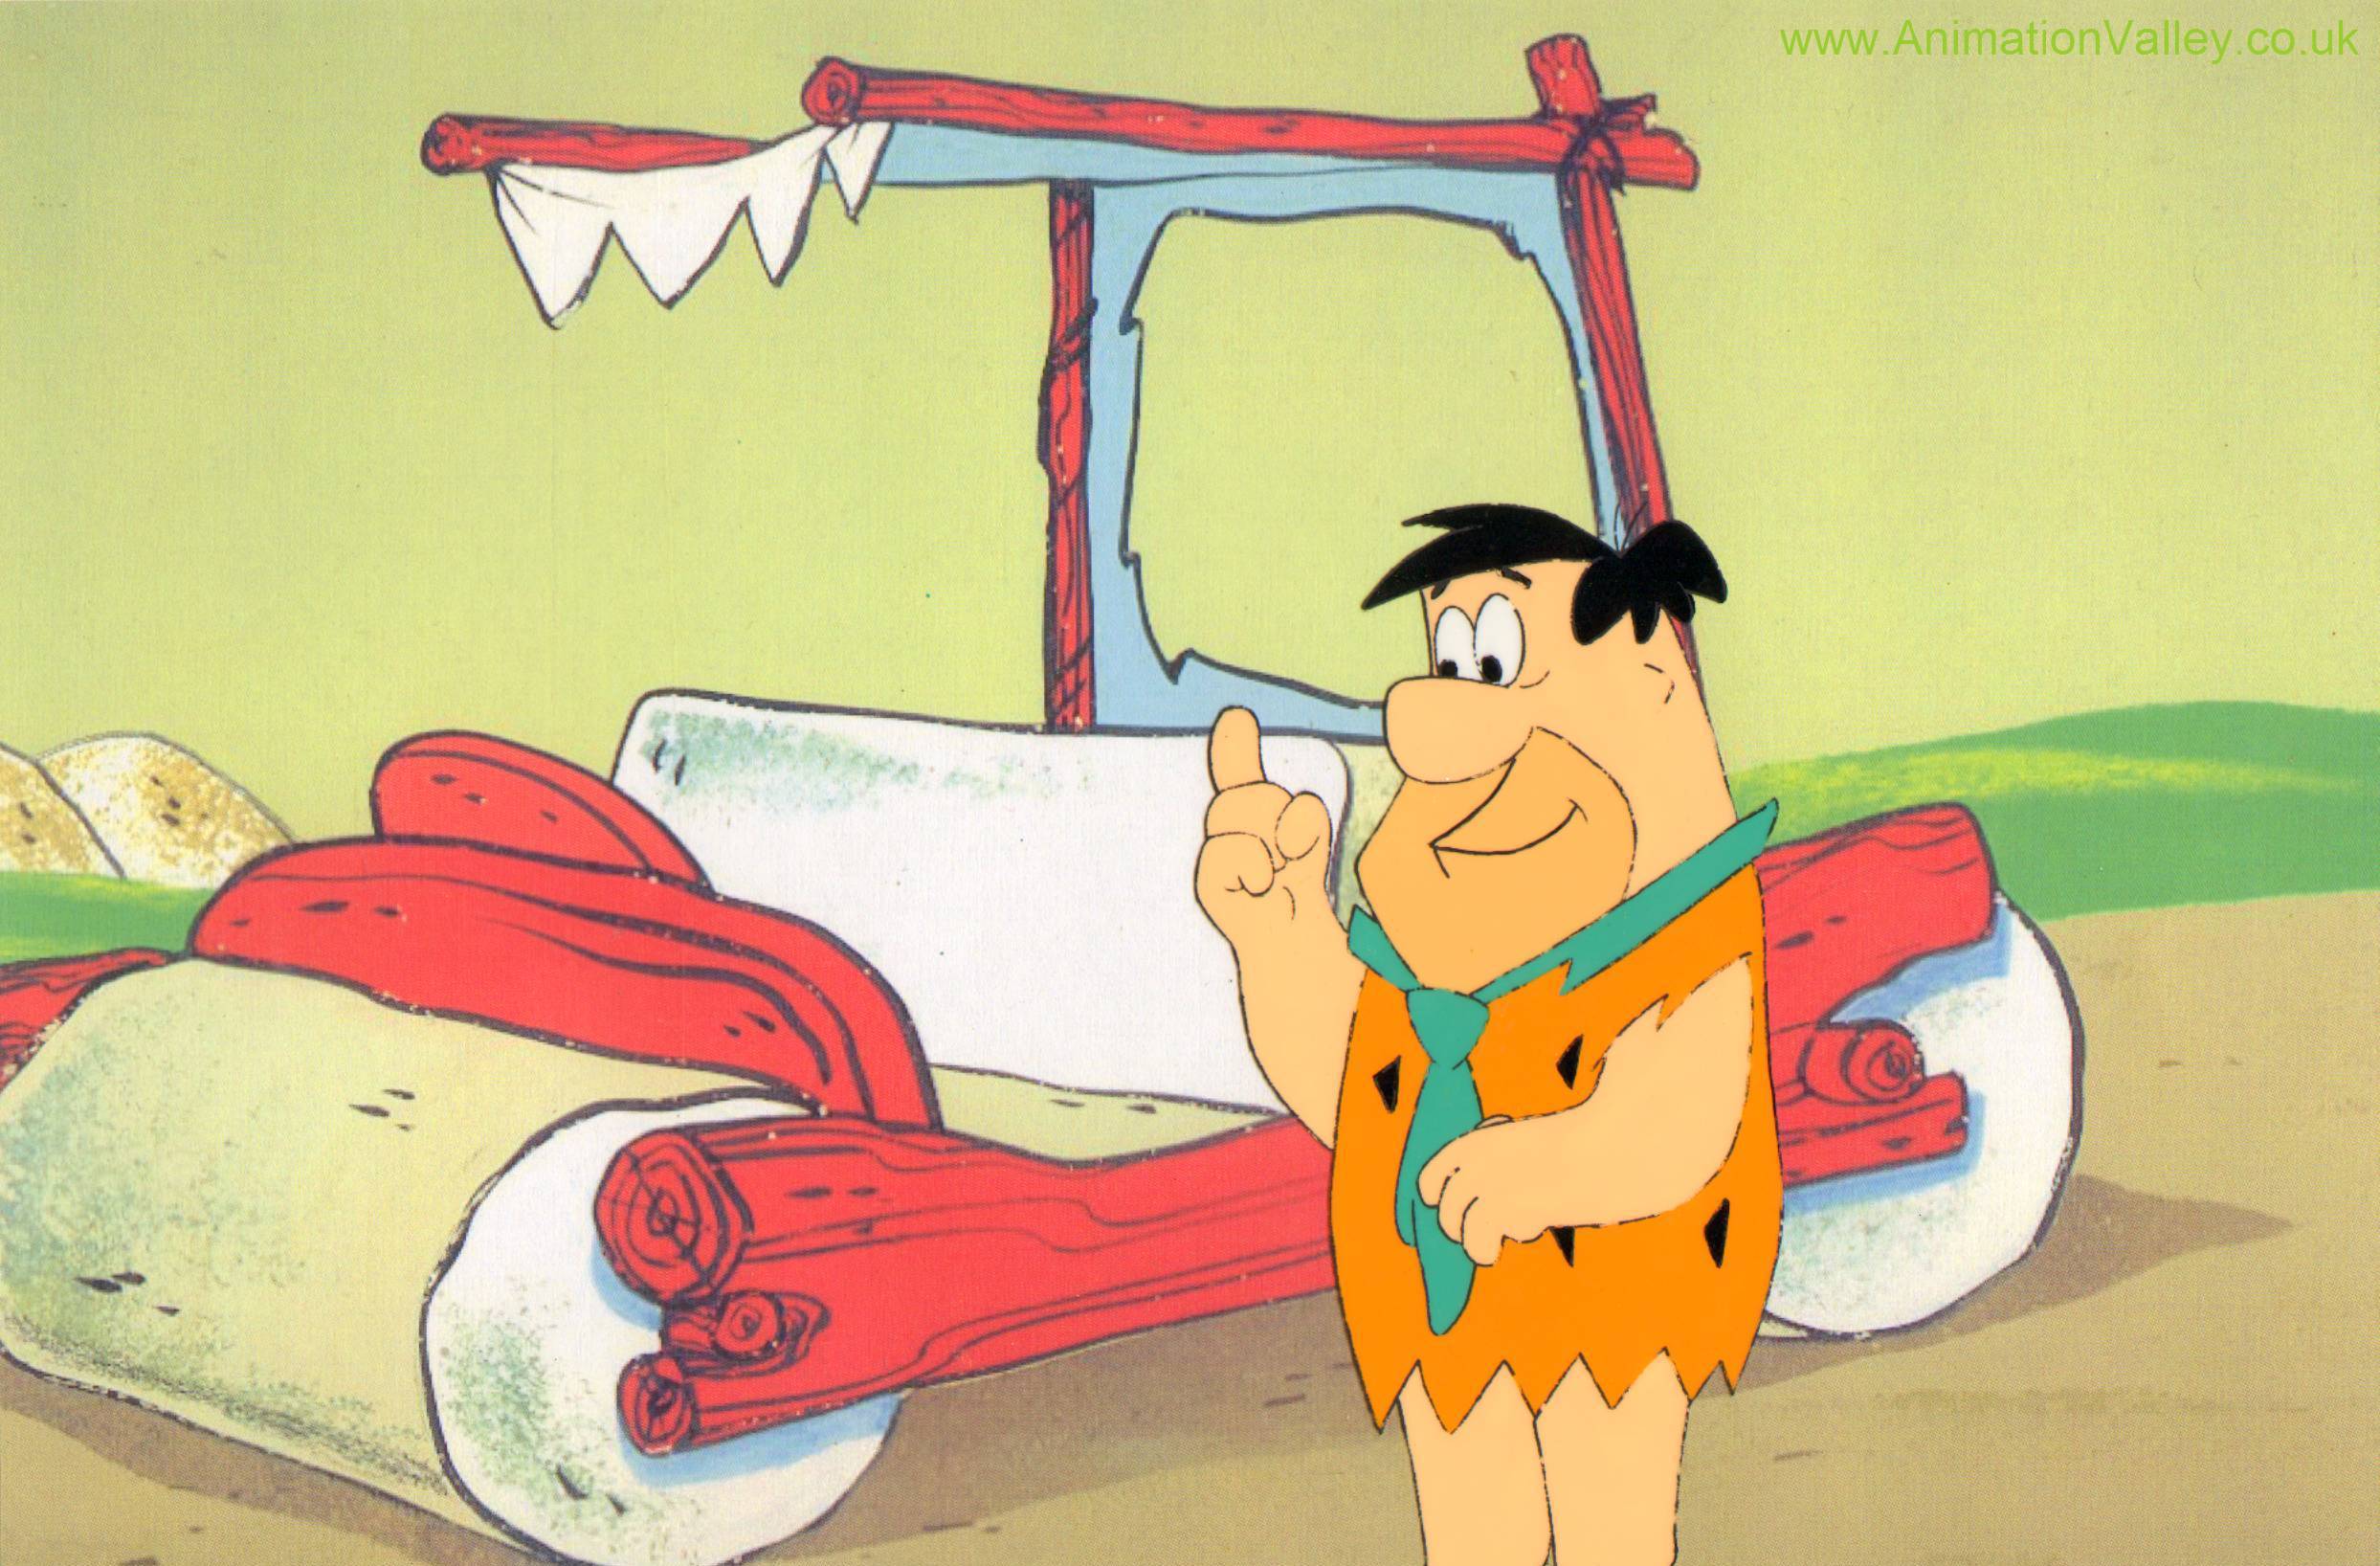 Free download The Flintstones image Fred Flintstone Production Cel HD wallp...